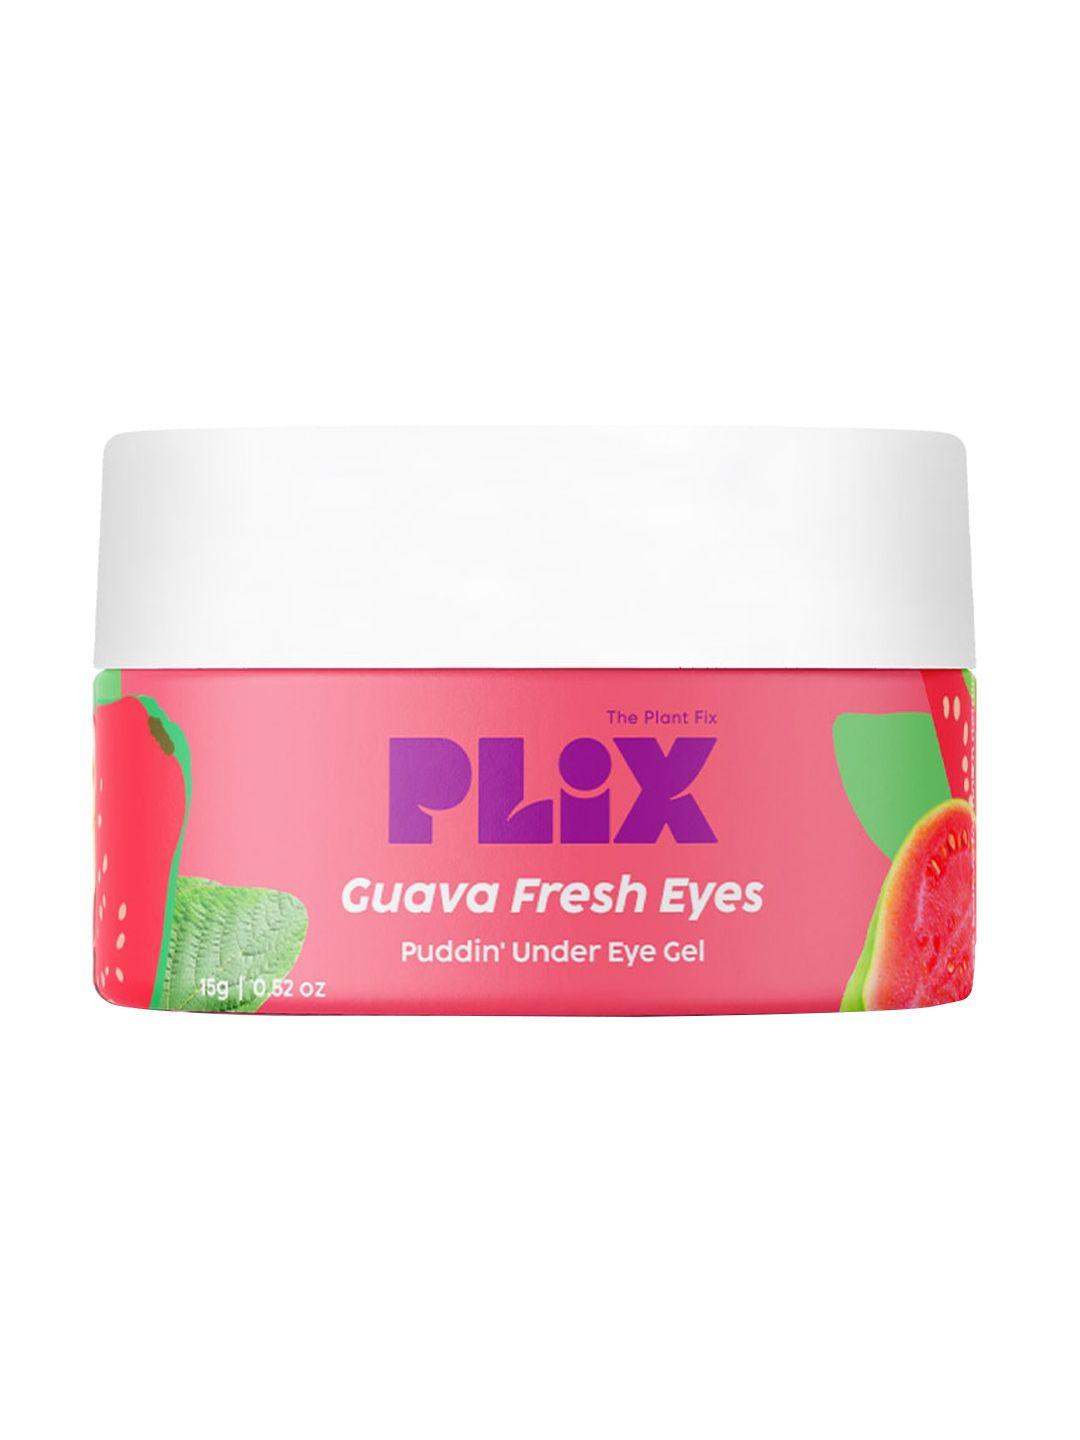 plix-the-plant-fix-guava-fresh-eyes-puddin'-under-eye-gel---15-g